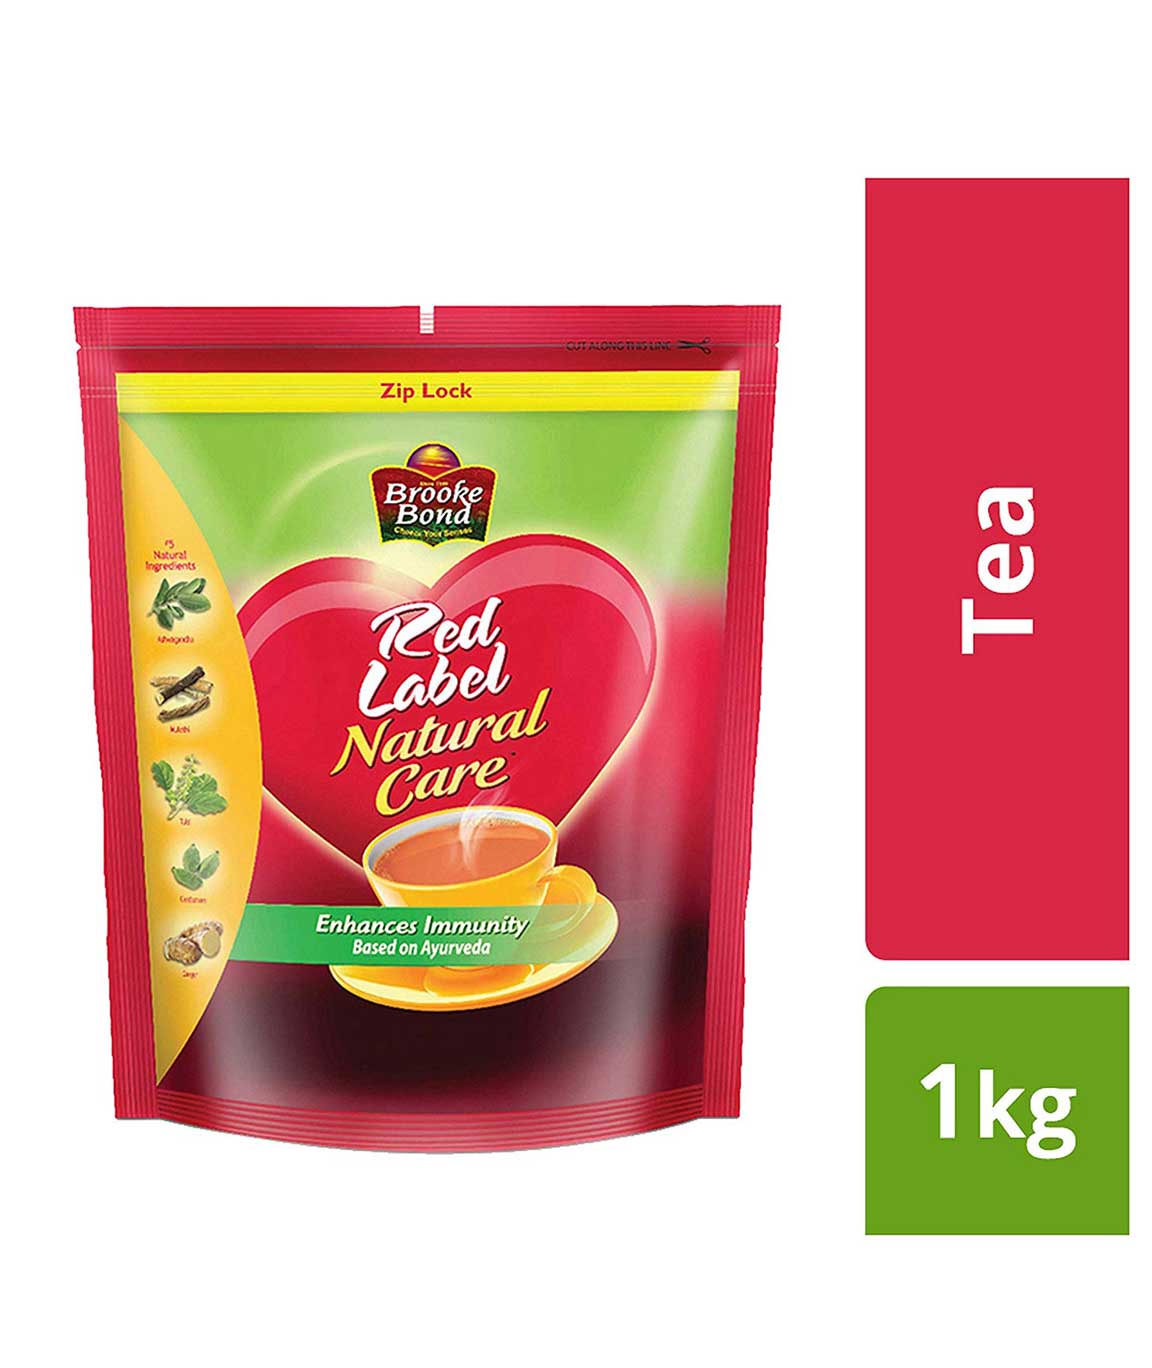 Red Label Natural Care Tea, 1kg